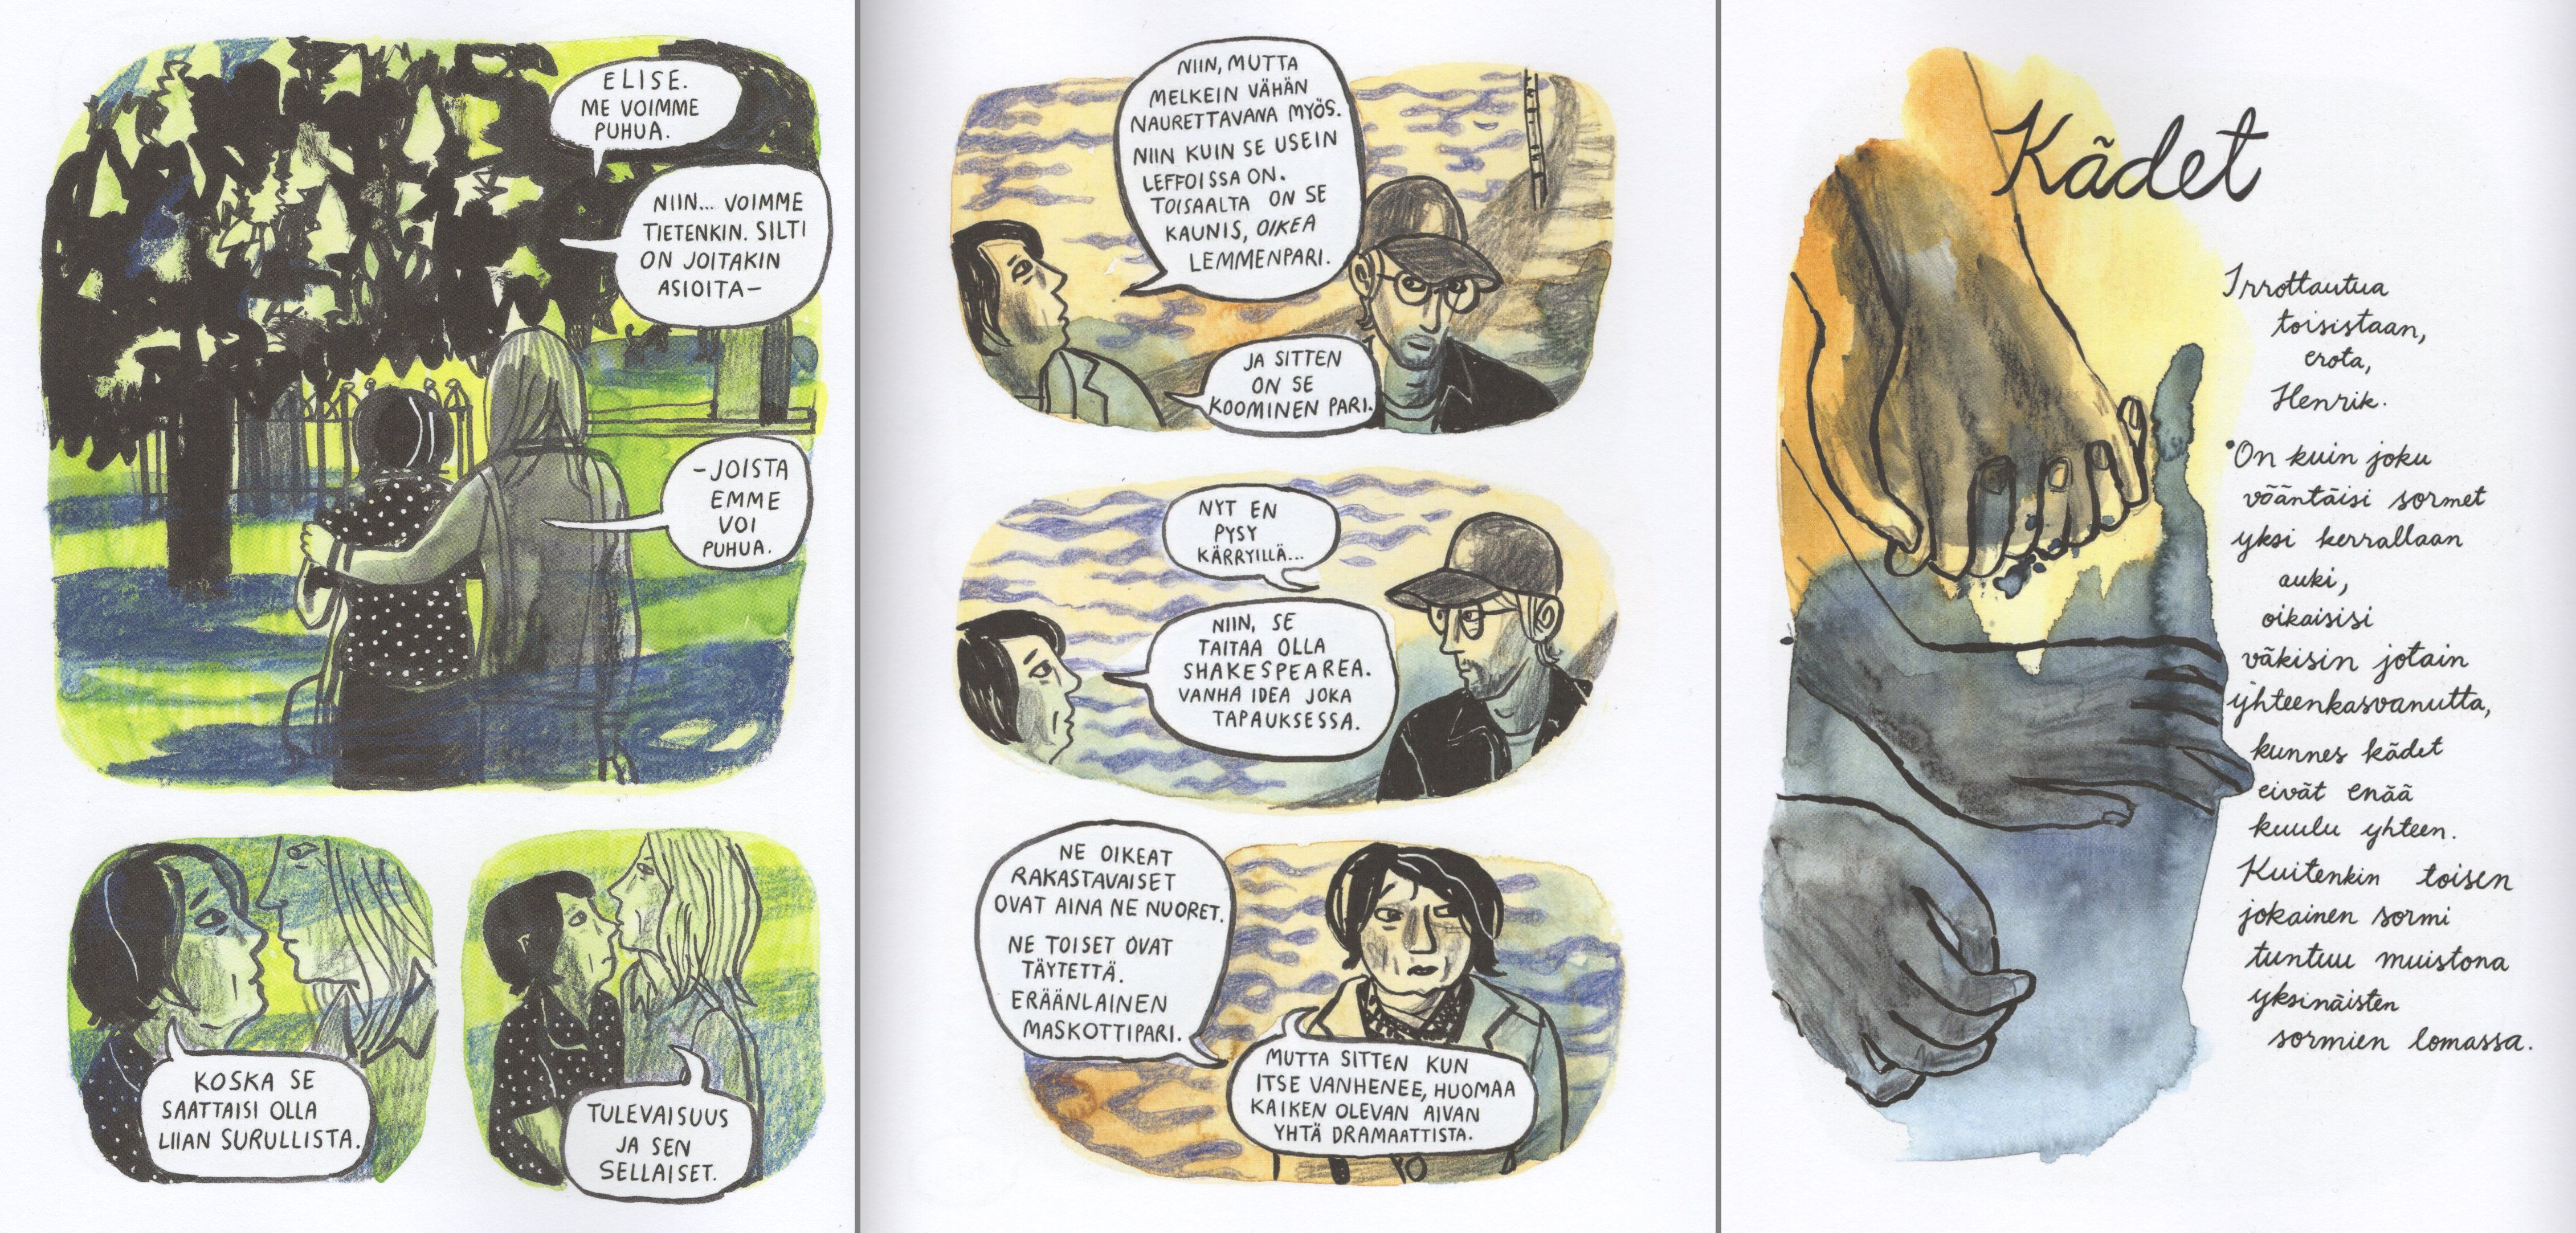 Kolmen sivun kooste Anneli Furmarkin sarjakuvaromaanista Tule kanssani kulman taa.